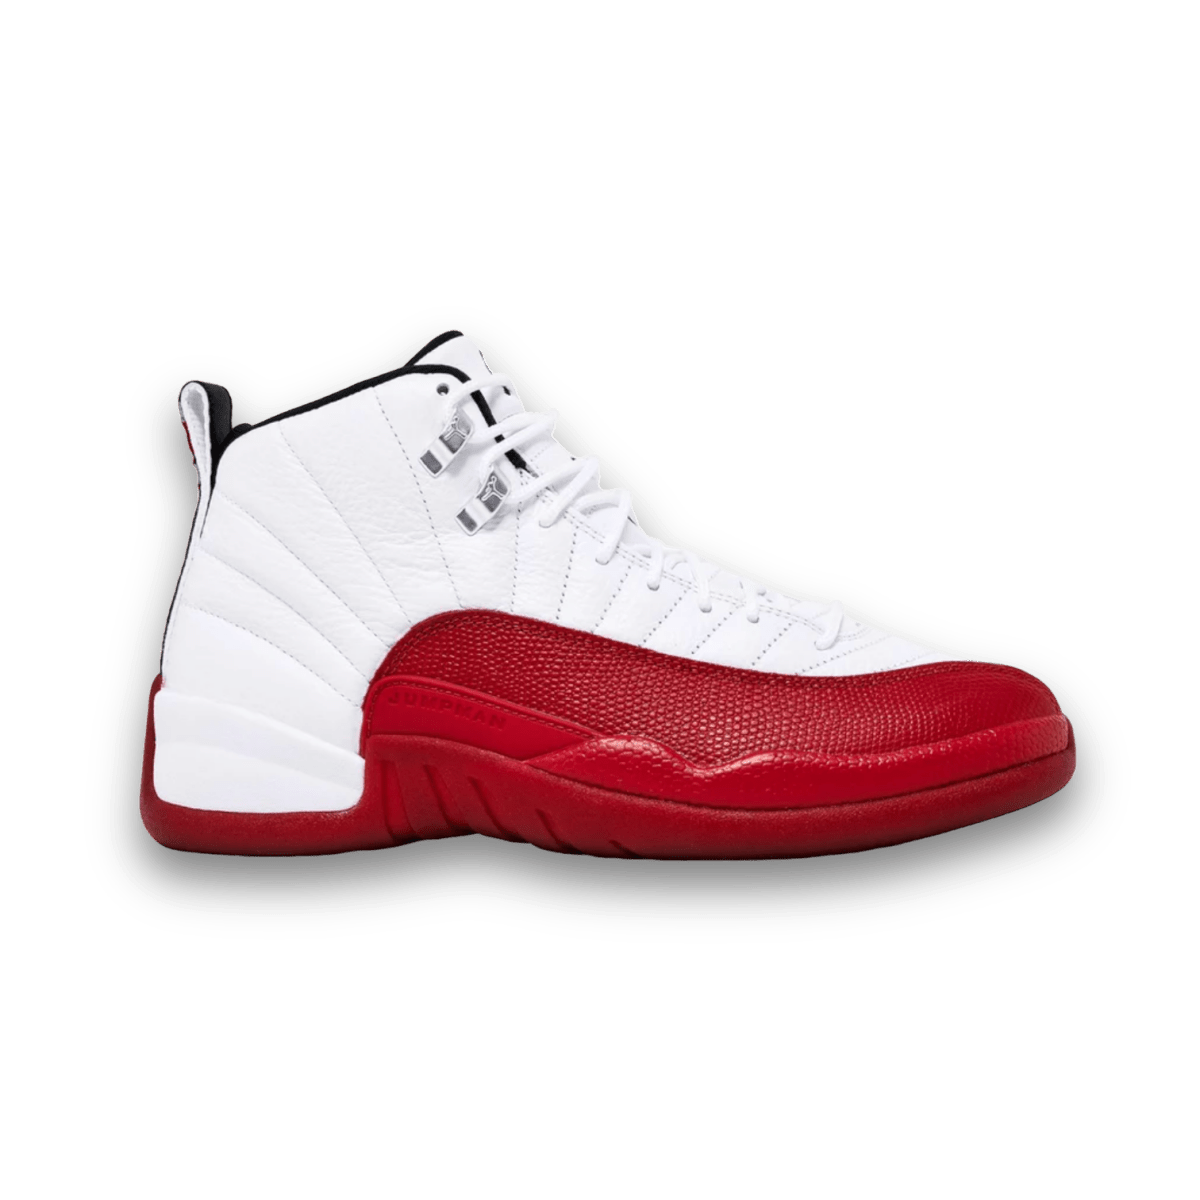 Air Jordan 12 Retro 'Cherry' 2023 - Grade School - Mid Sneaker - Jawns on Fire Sneakers & Streetwear